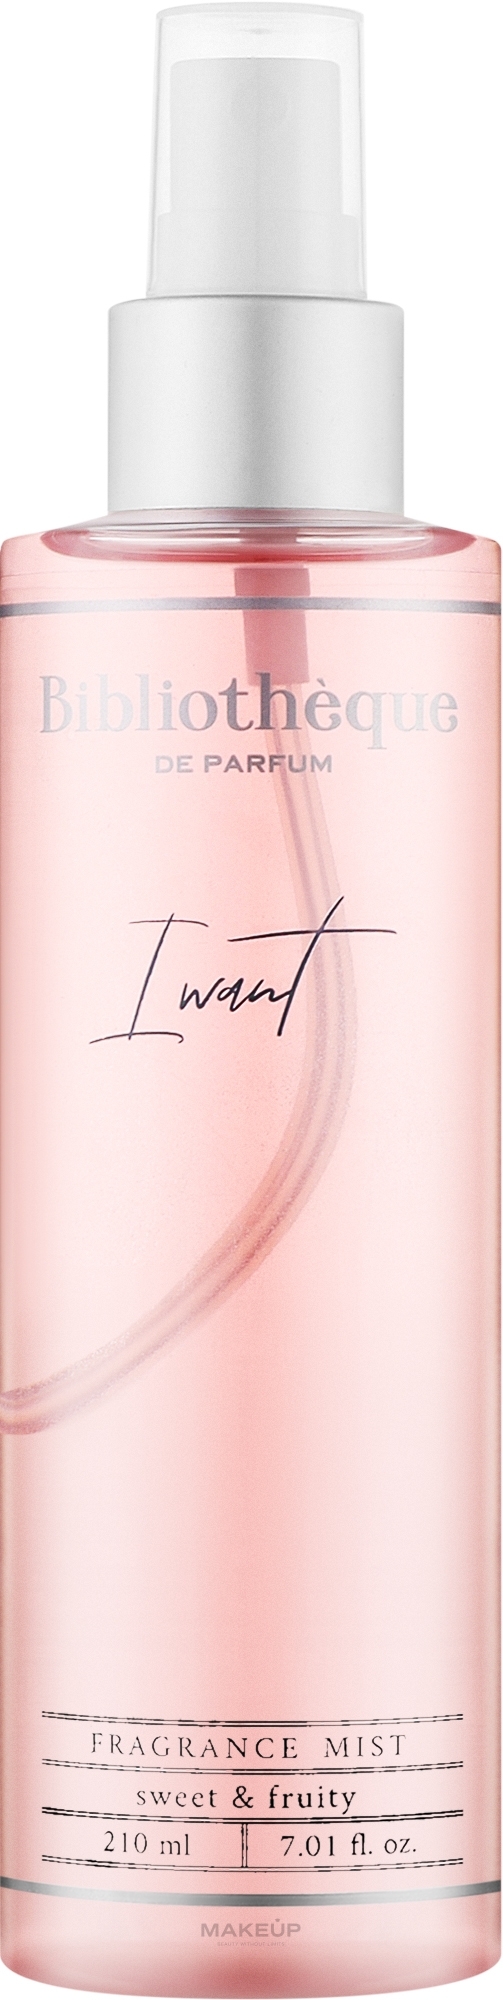 Bibliotheque de Parfum I Want - Парфюмированный мист для тела с шиммером — фото 210ml